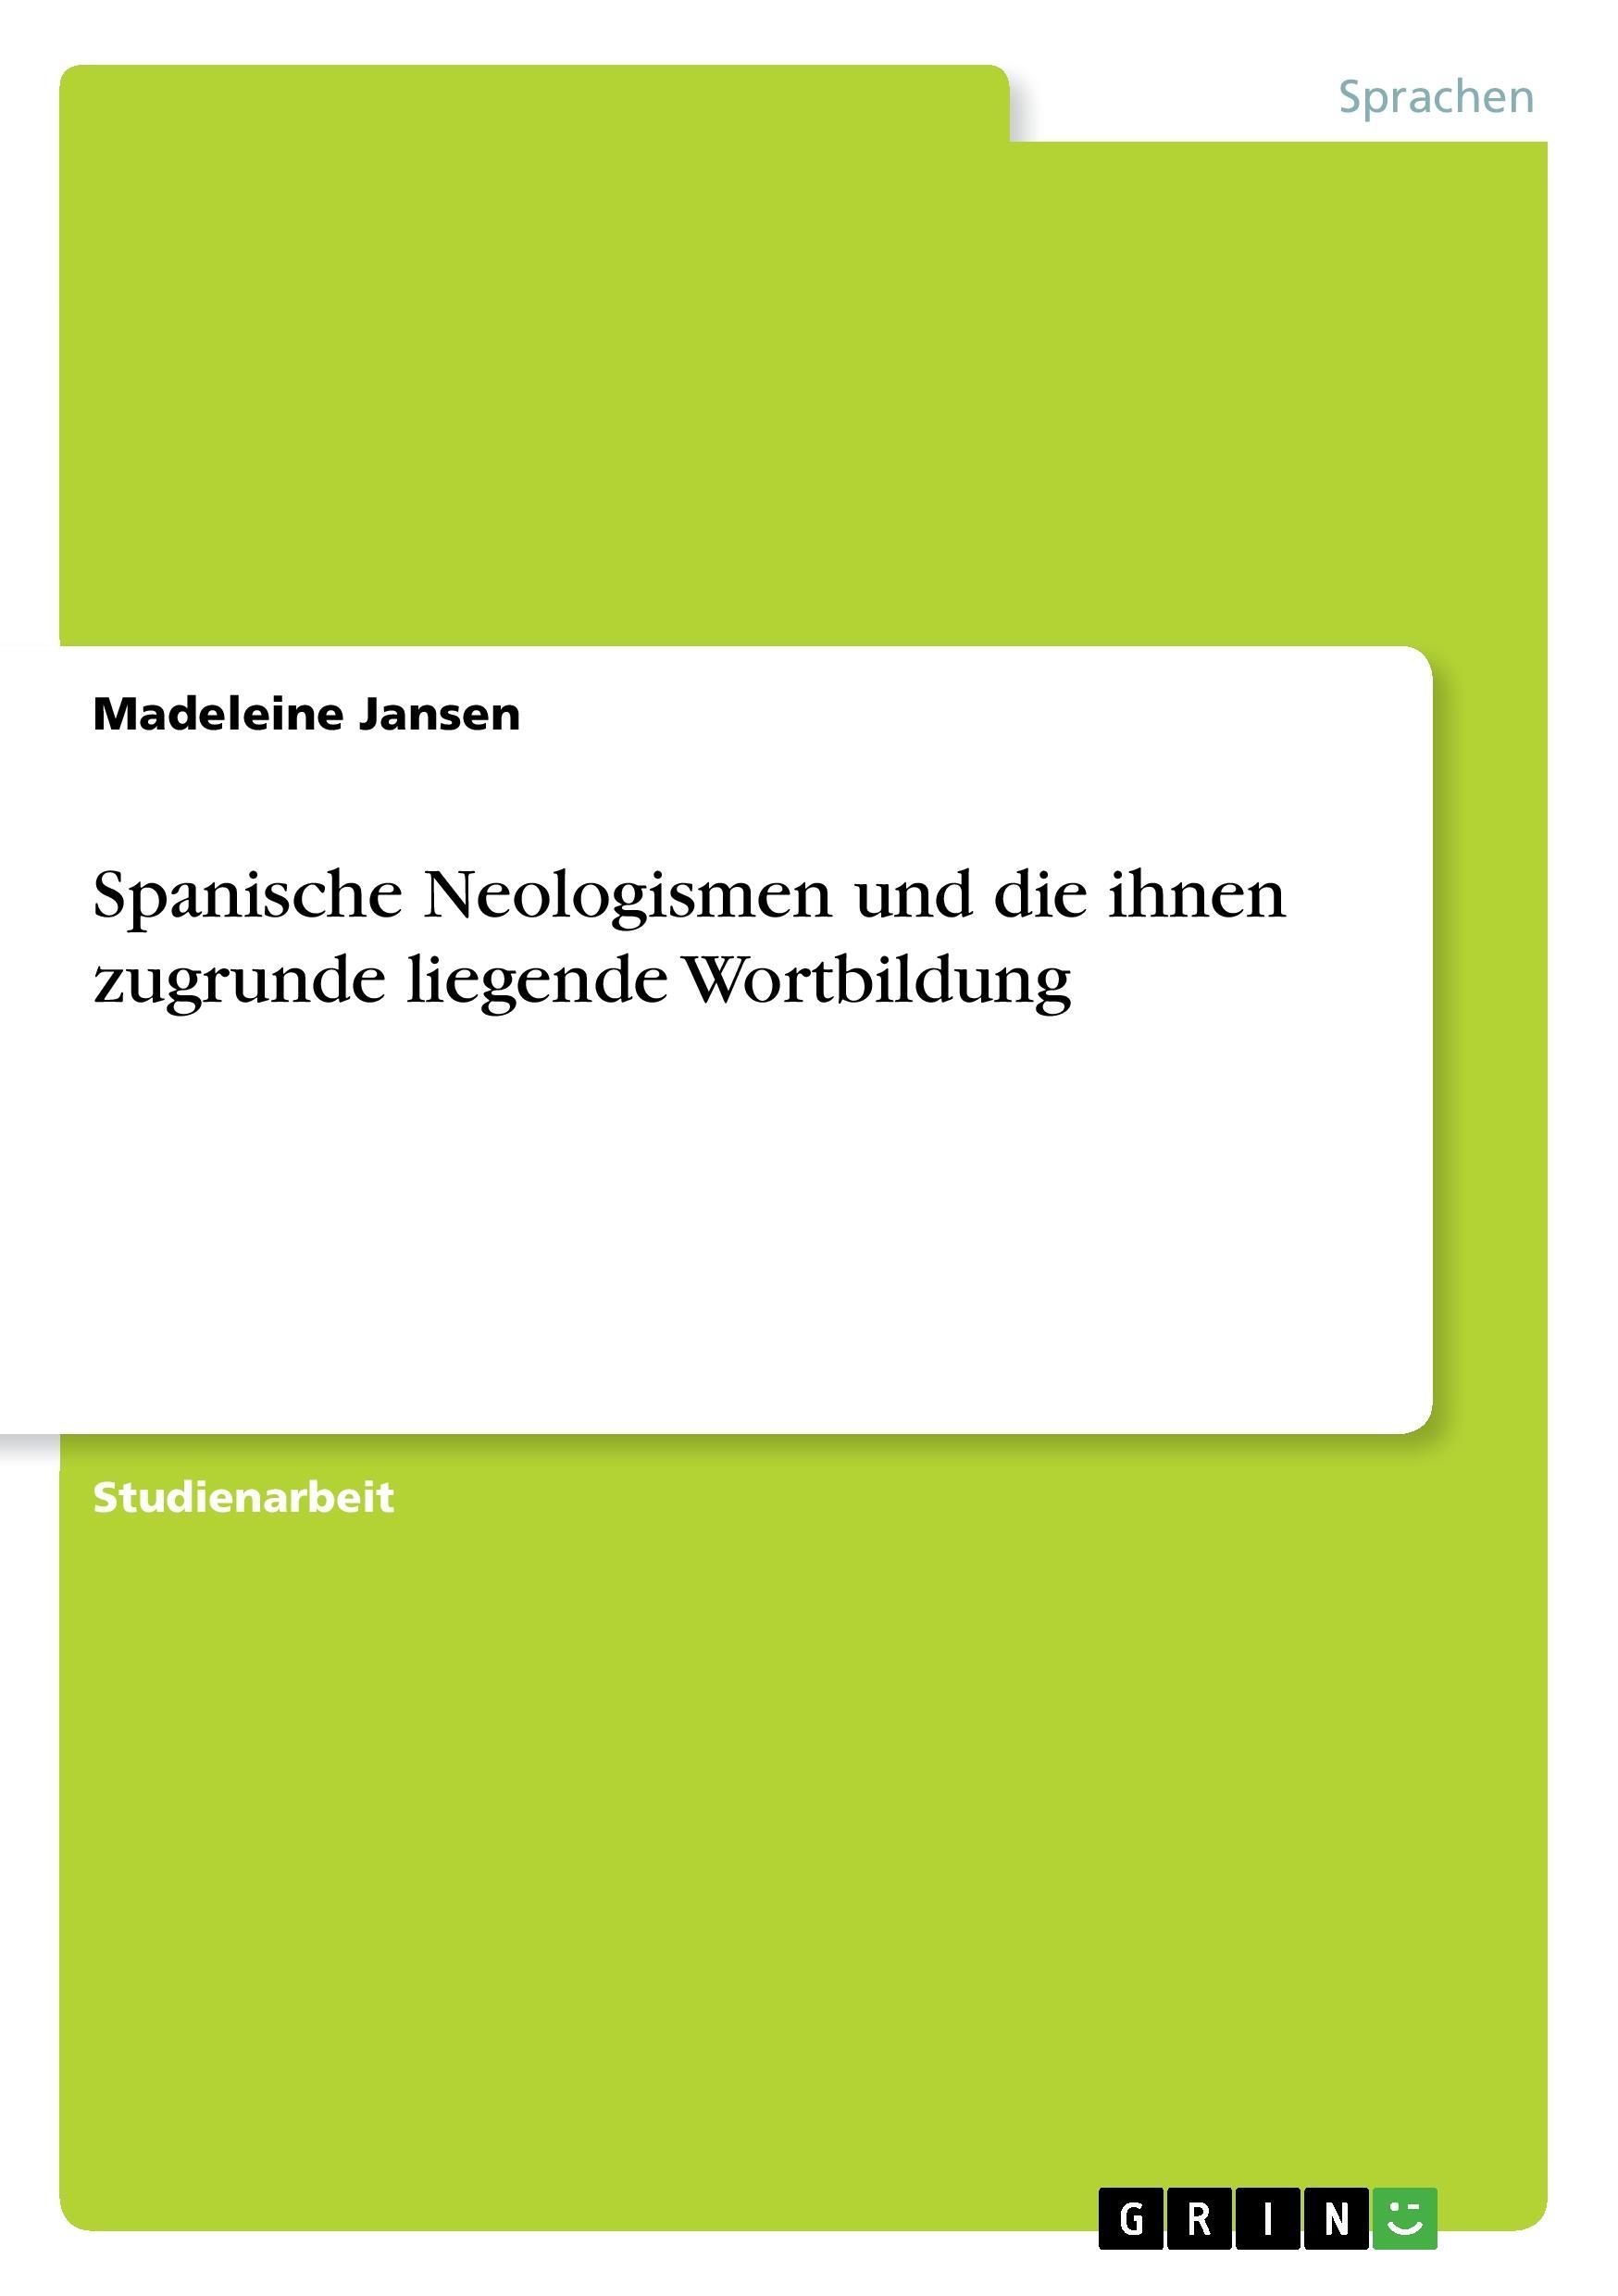 Spanische Neologismen und die ihnen zugrunde liegende Wortbildung - Jansen, Madeleine